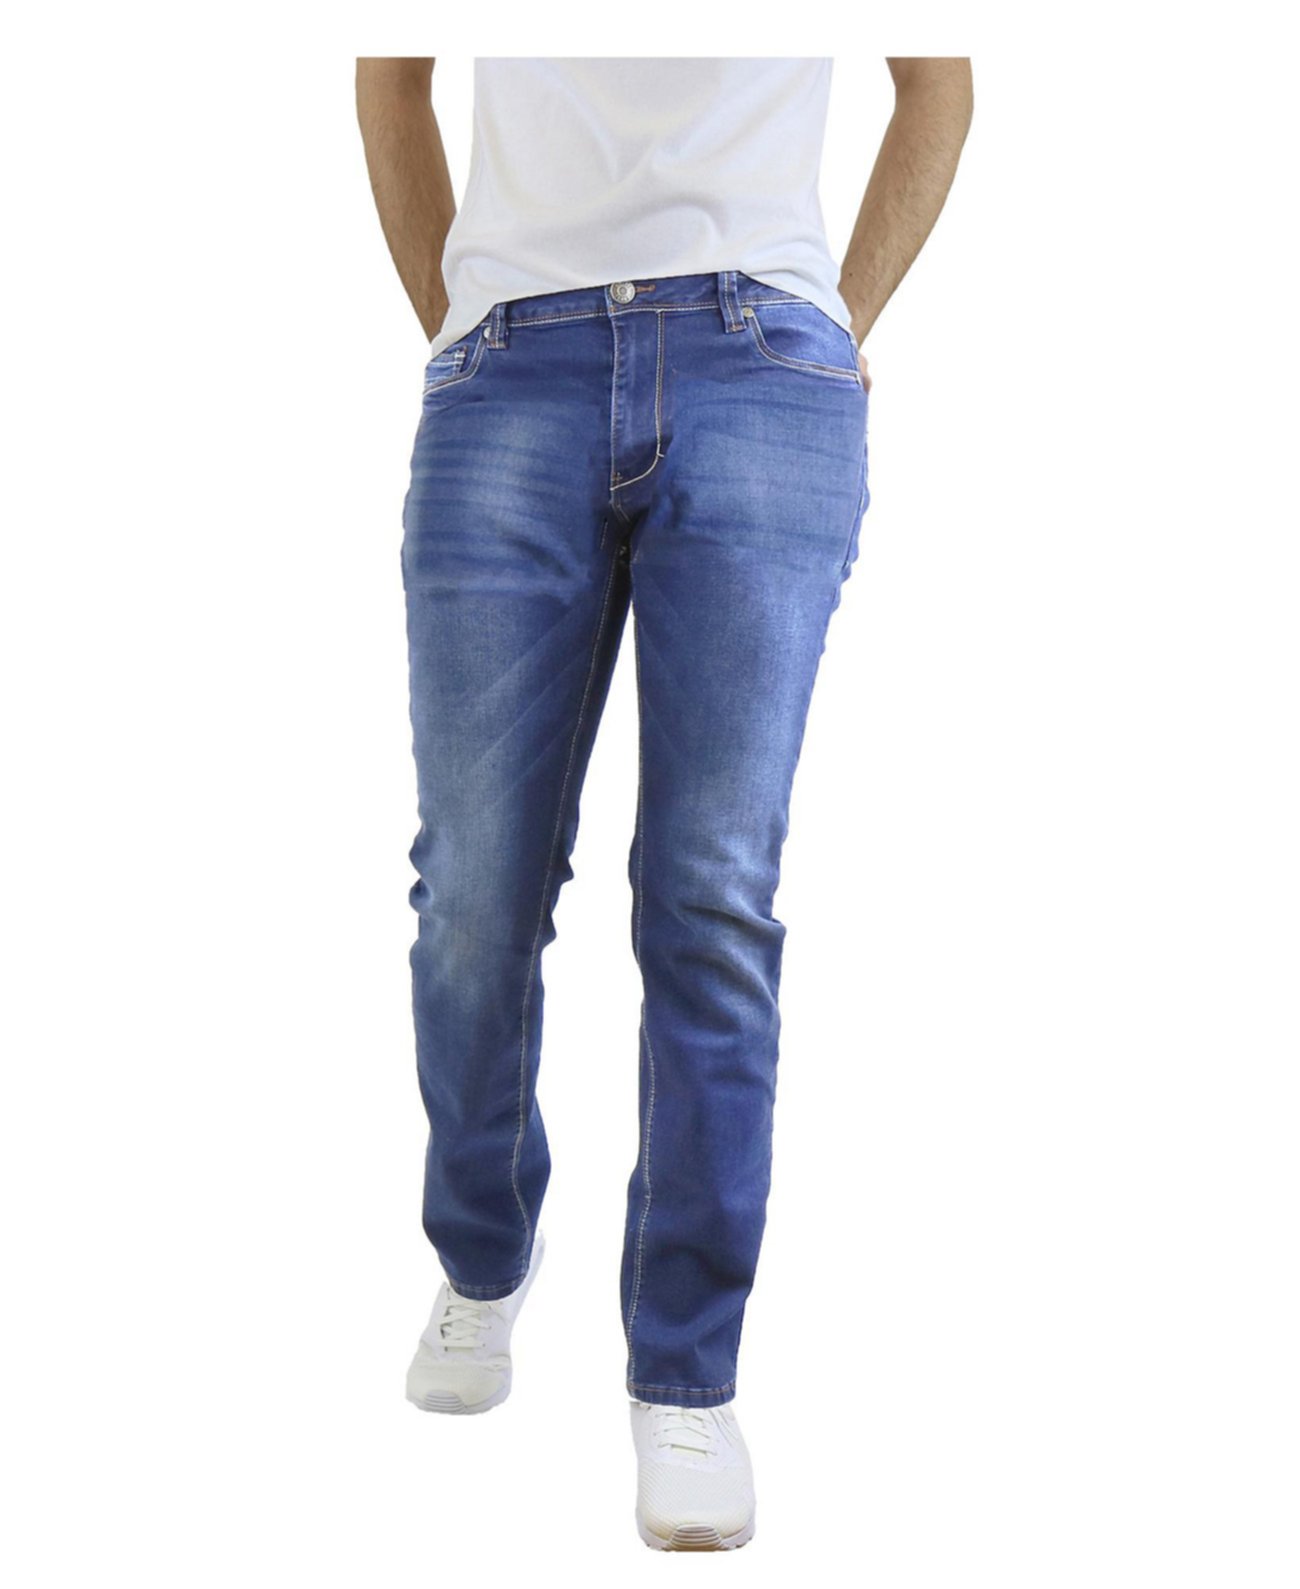 Мужские эластичные джинсы с прямыми ногами Galaxy By Harvic